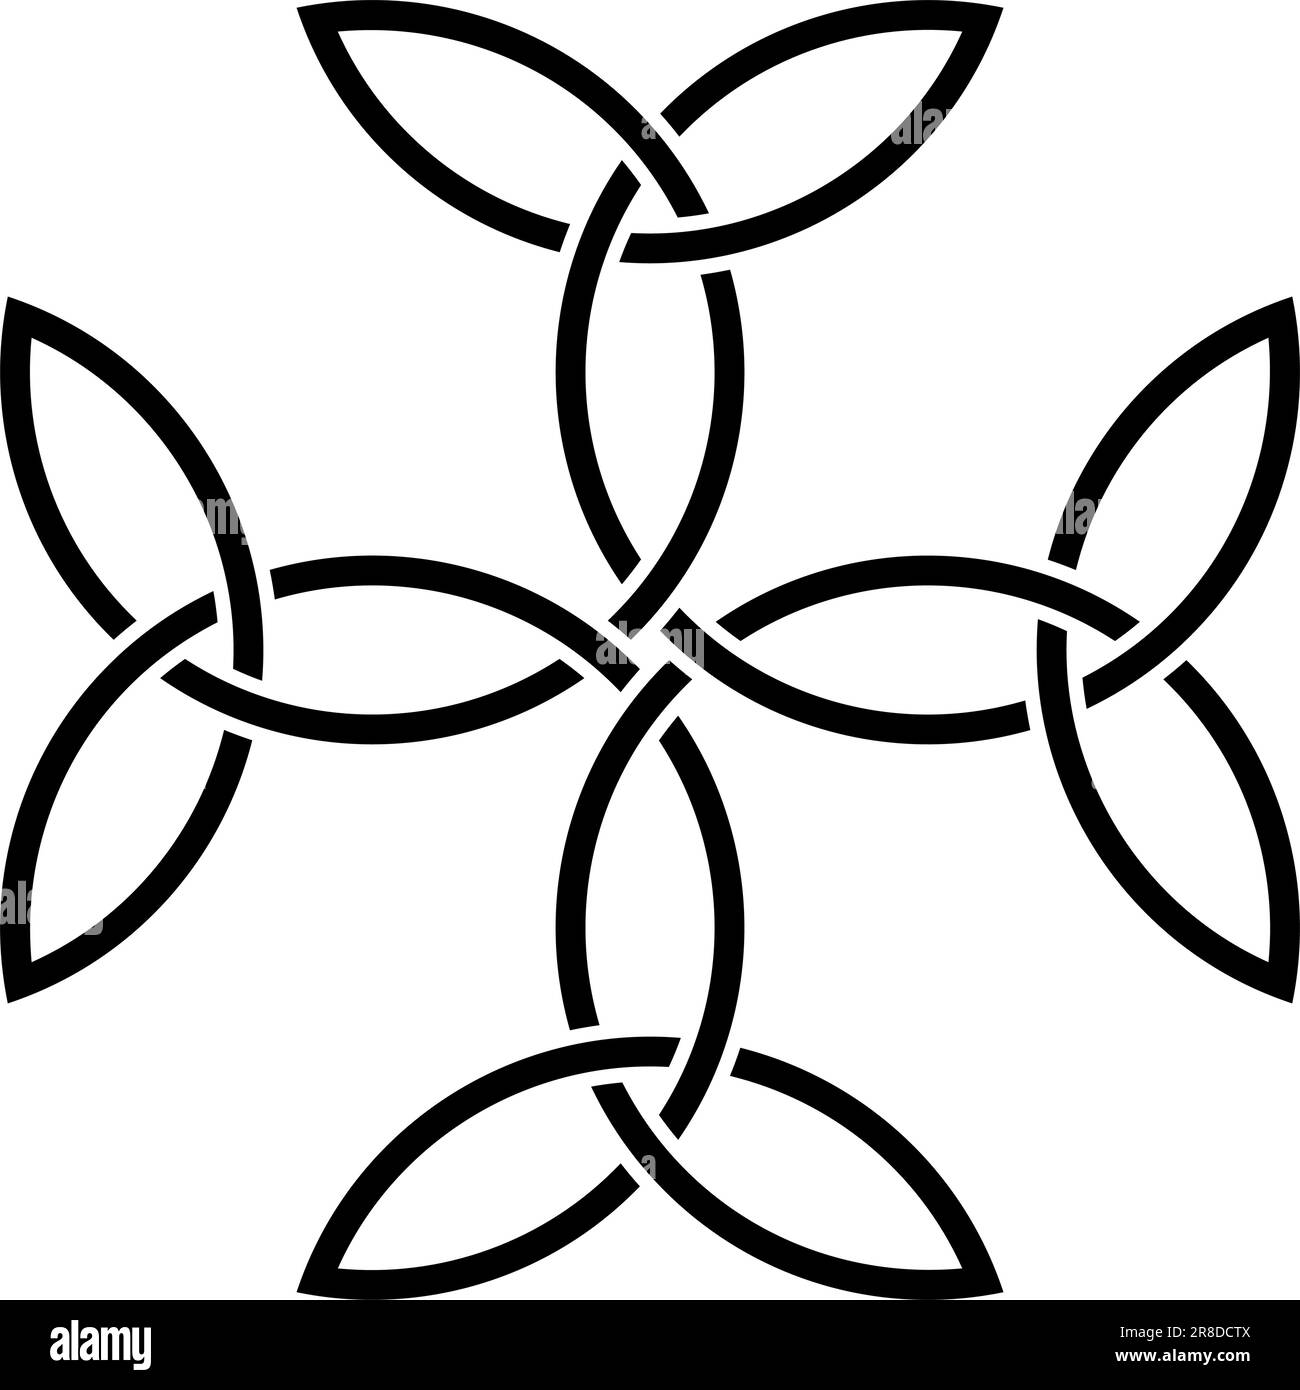 Carolingian Cross in black. Celtic symbol. Isolated background. Symbolizes unity, balance, and God. Stock Vector